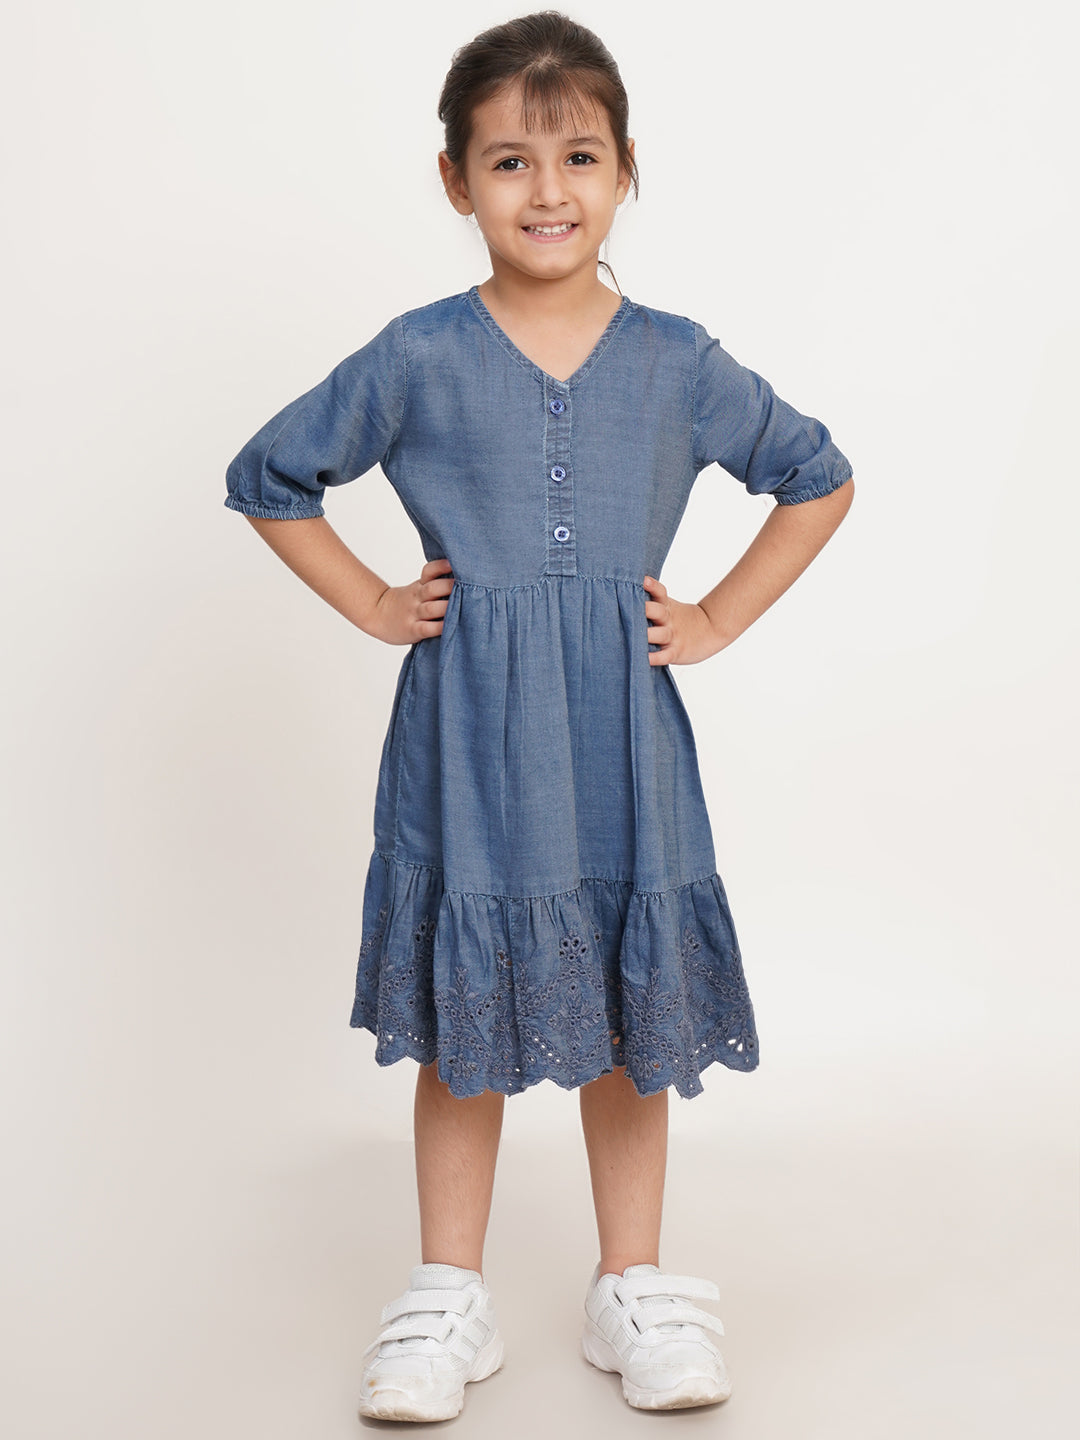 CREATIVE KID'S Girl Navy Blue Schiffli Denim Fit & Flare Dress